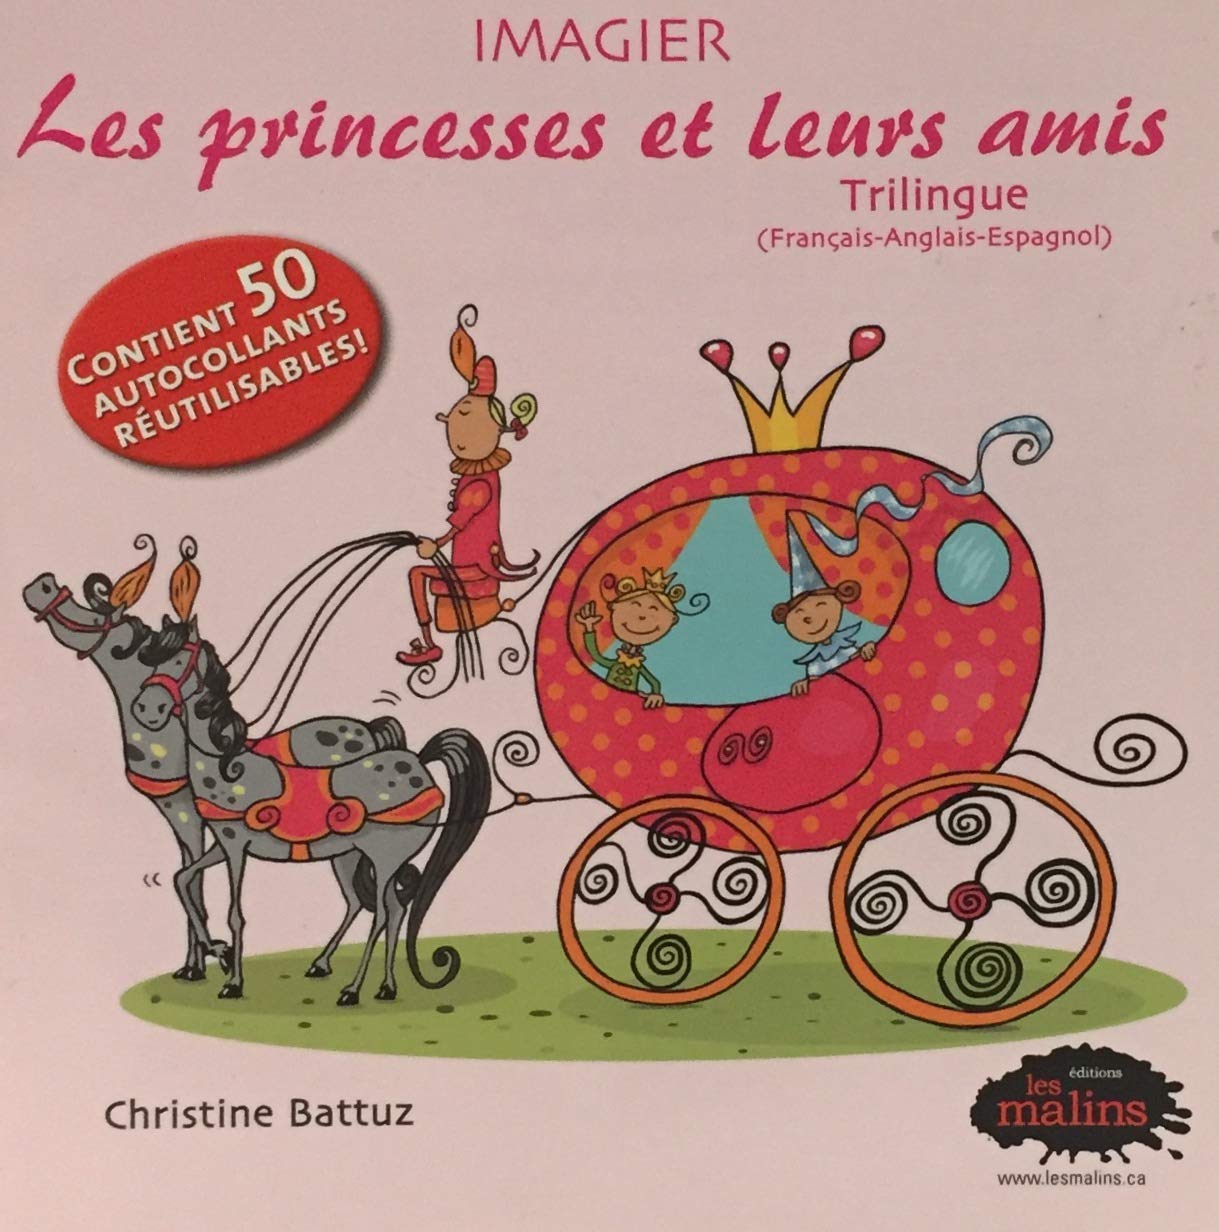 Livre ISBN 2896570330 Les princesses et leurs amis (Christine Battuz)